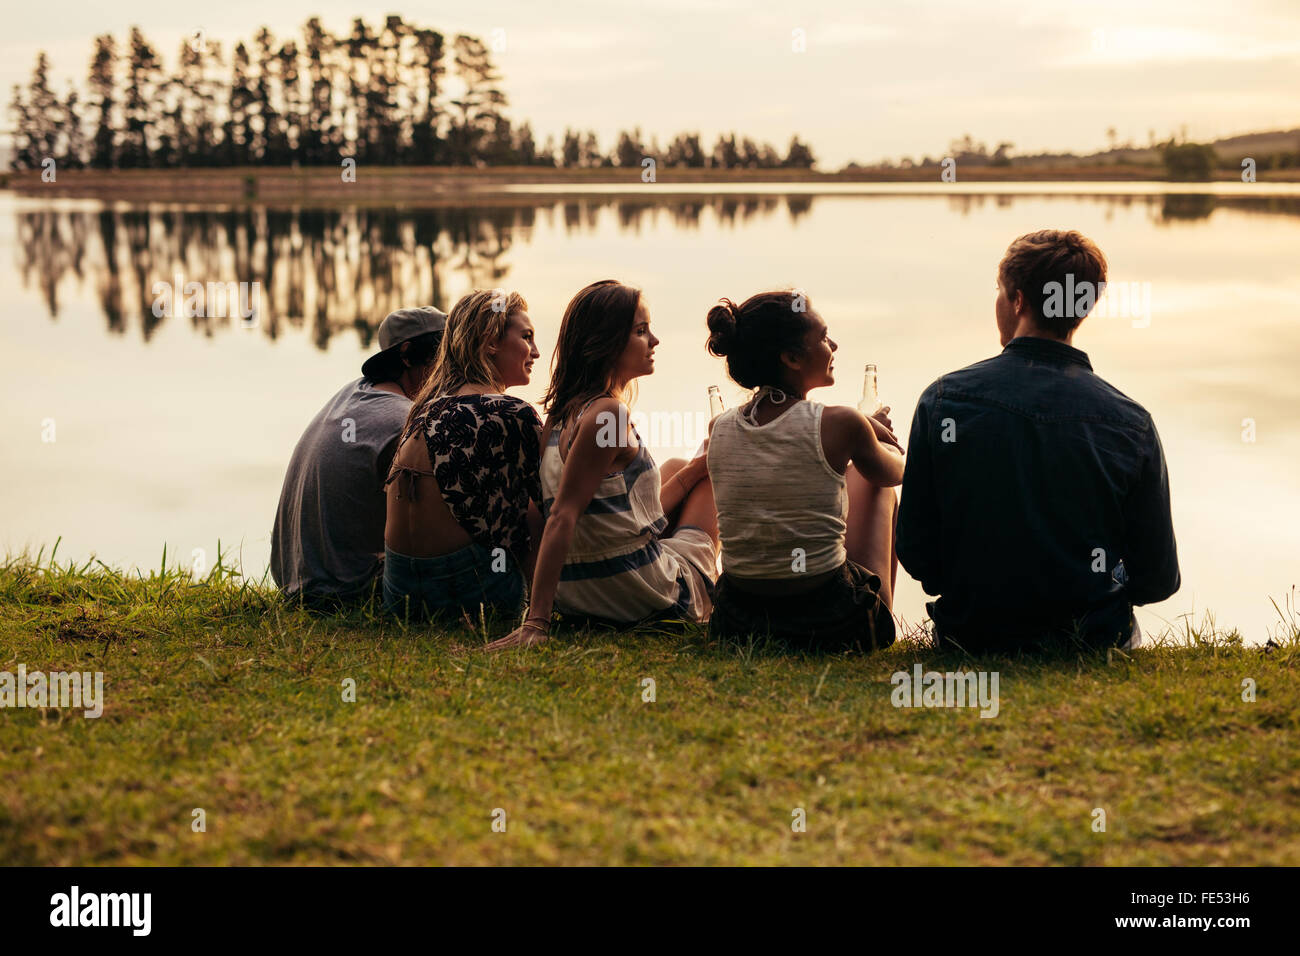 Hintere Ansicht Porträt Gruppe von jungen Freunden entspannende an einem See. Junge Menschen sitzen zusammen an einem See. Stockfoto